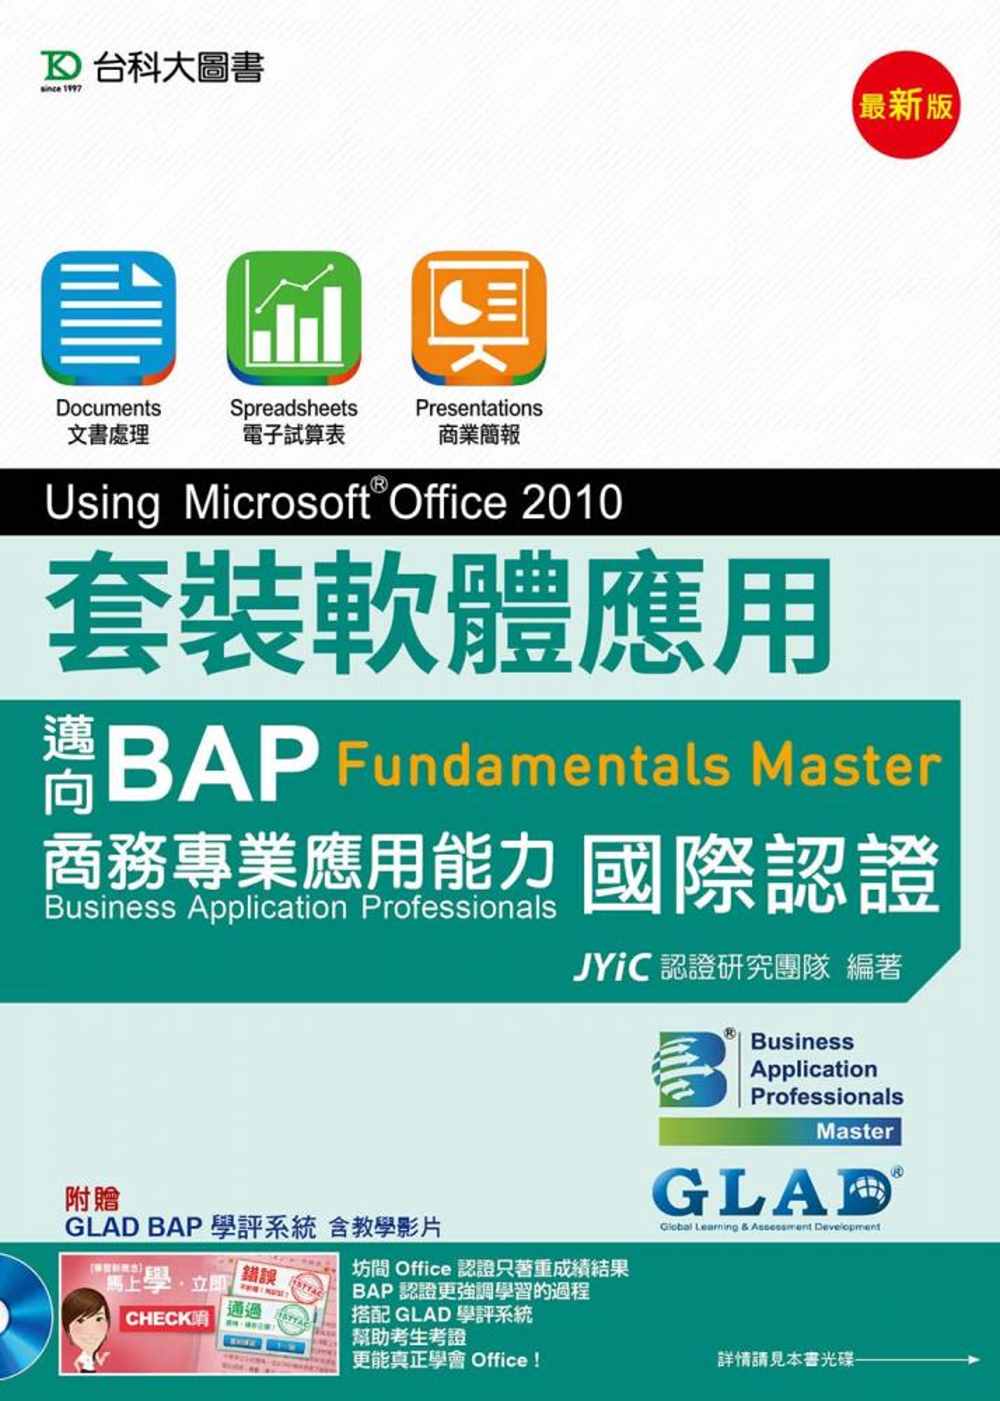 套裝軟體應用Using Microsoft® Office 2010：邁向BAP Fundamentals Master商務專業應用能力國際認證(最新版)(附贈BAP學評系統含教學影片)